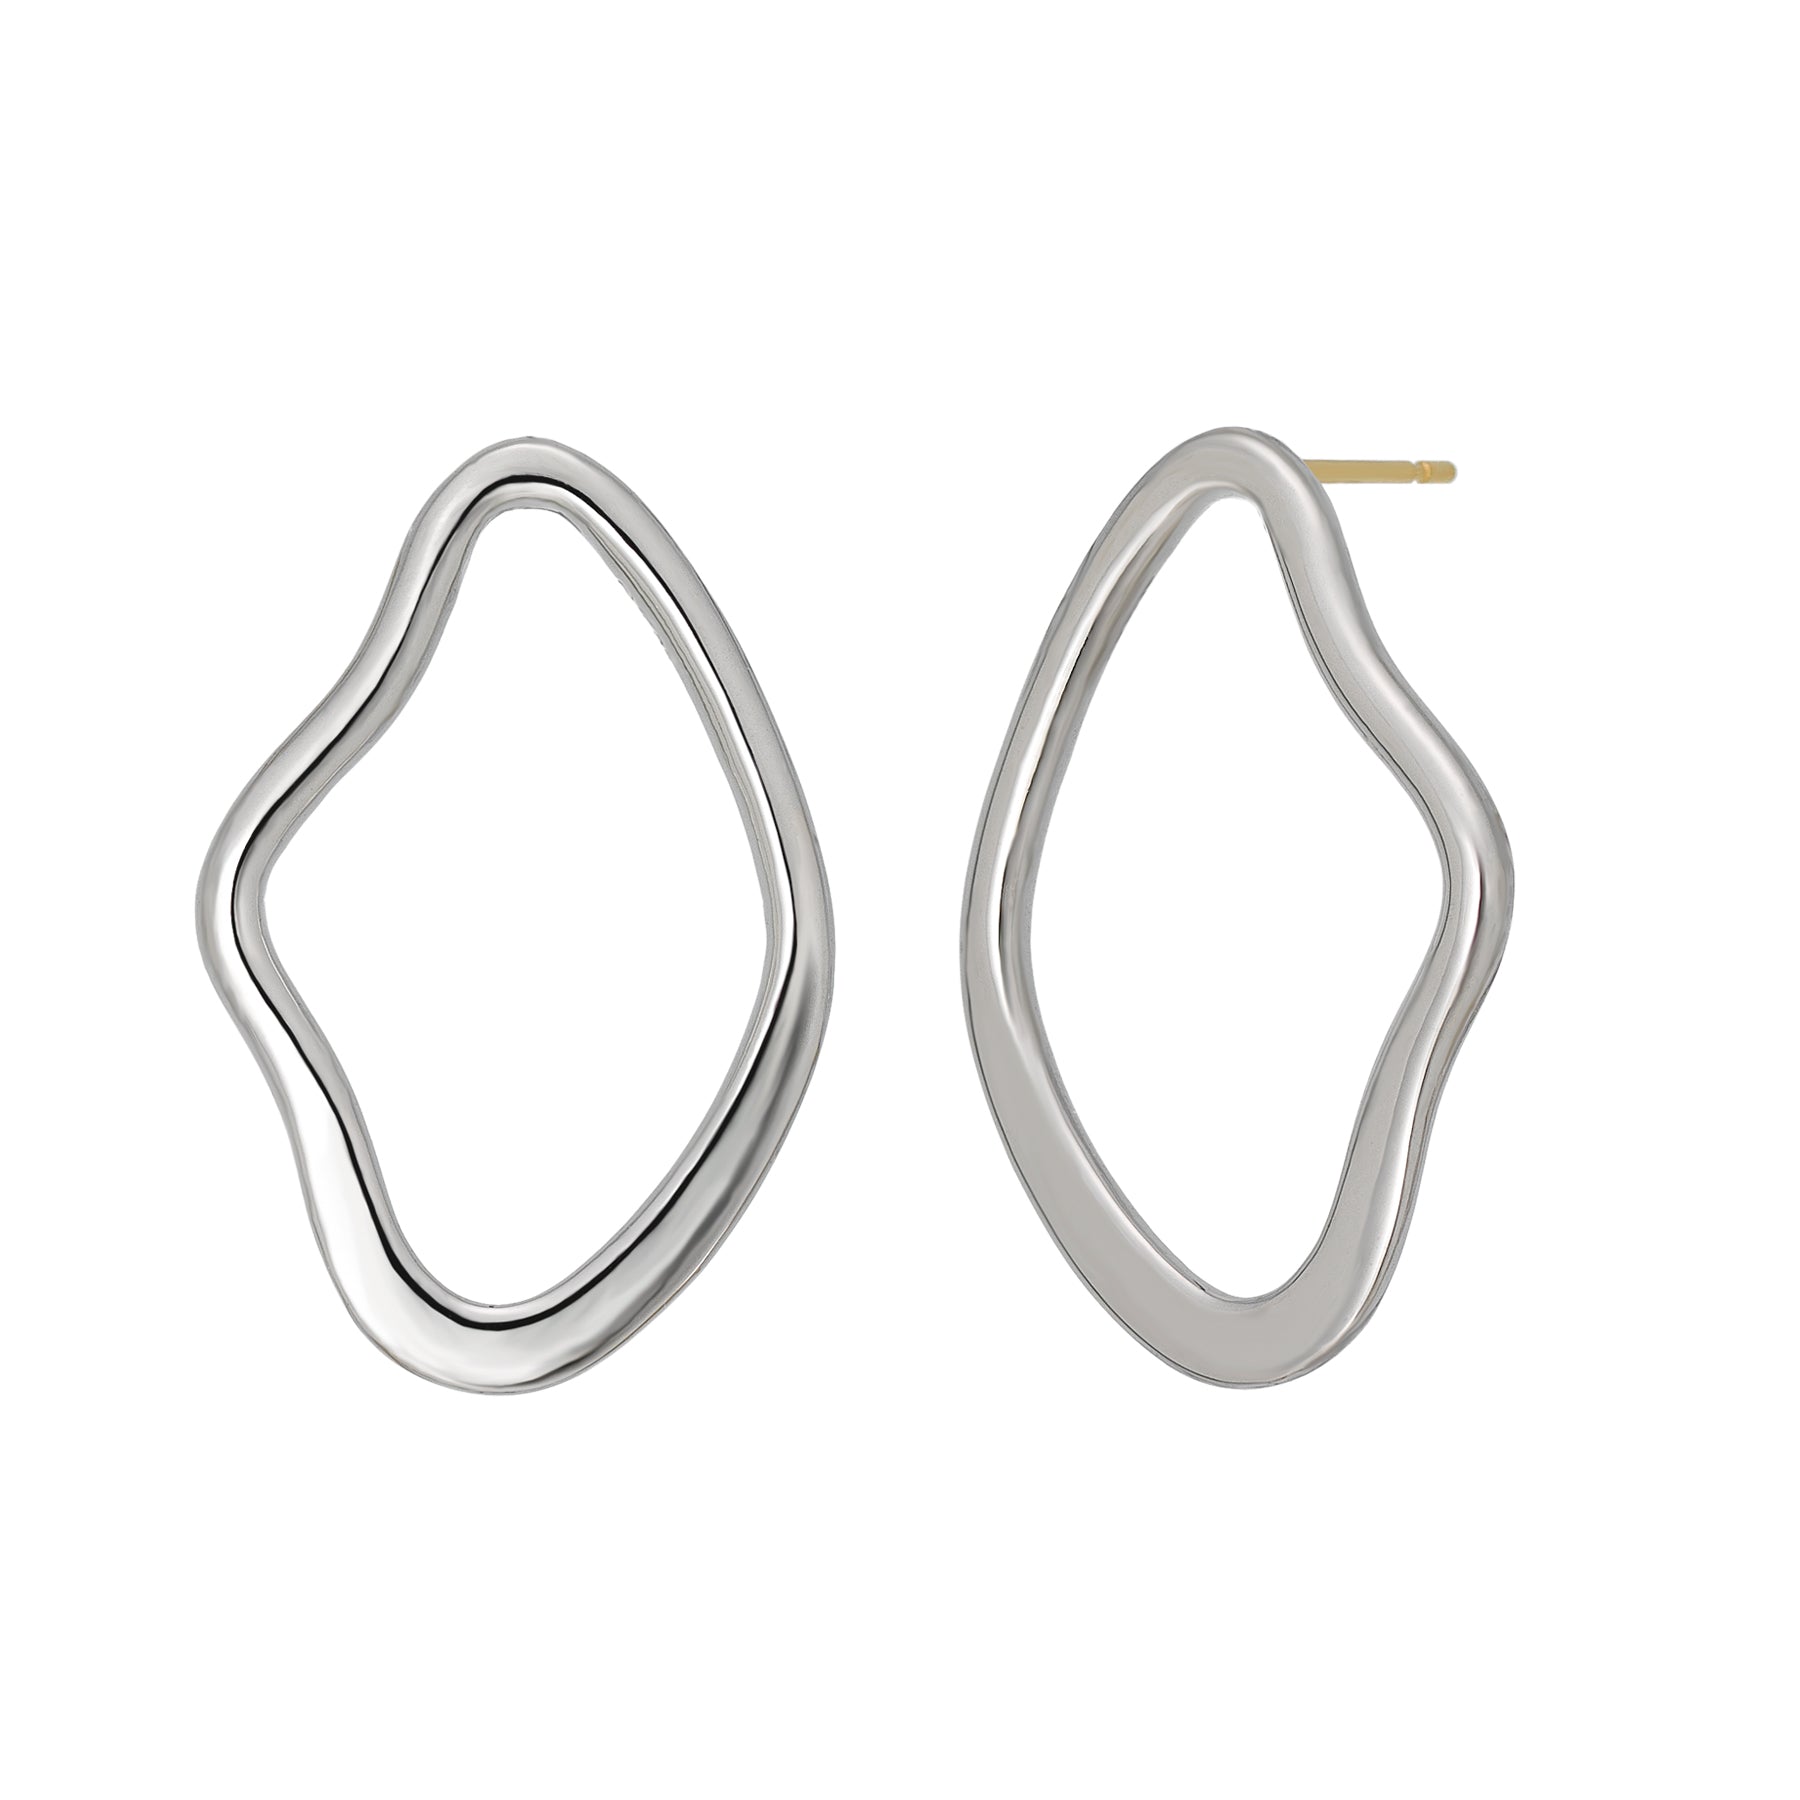 925 Sterling Silver Earrings "Wavy Hoop" - Product Image